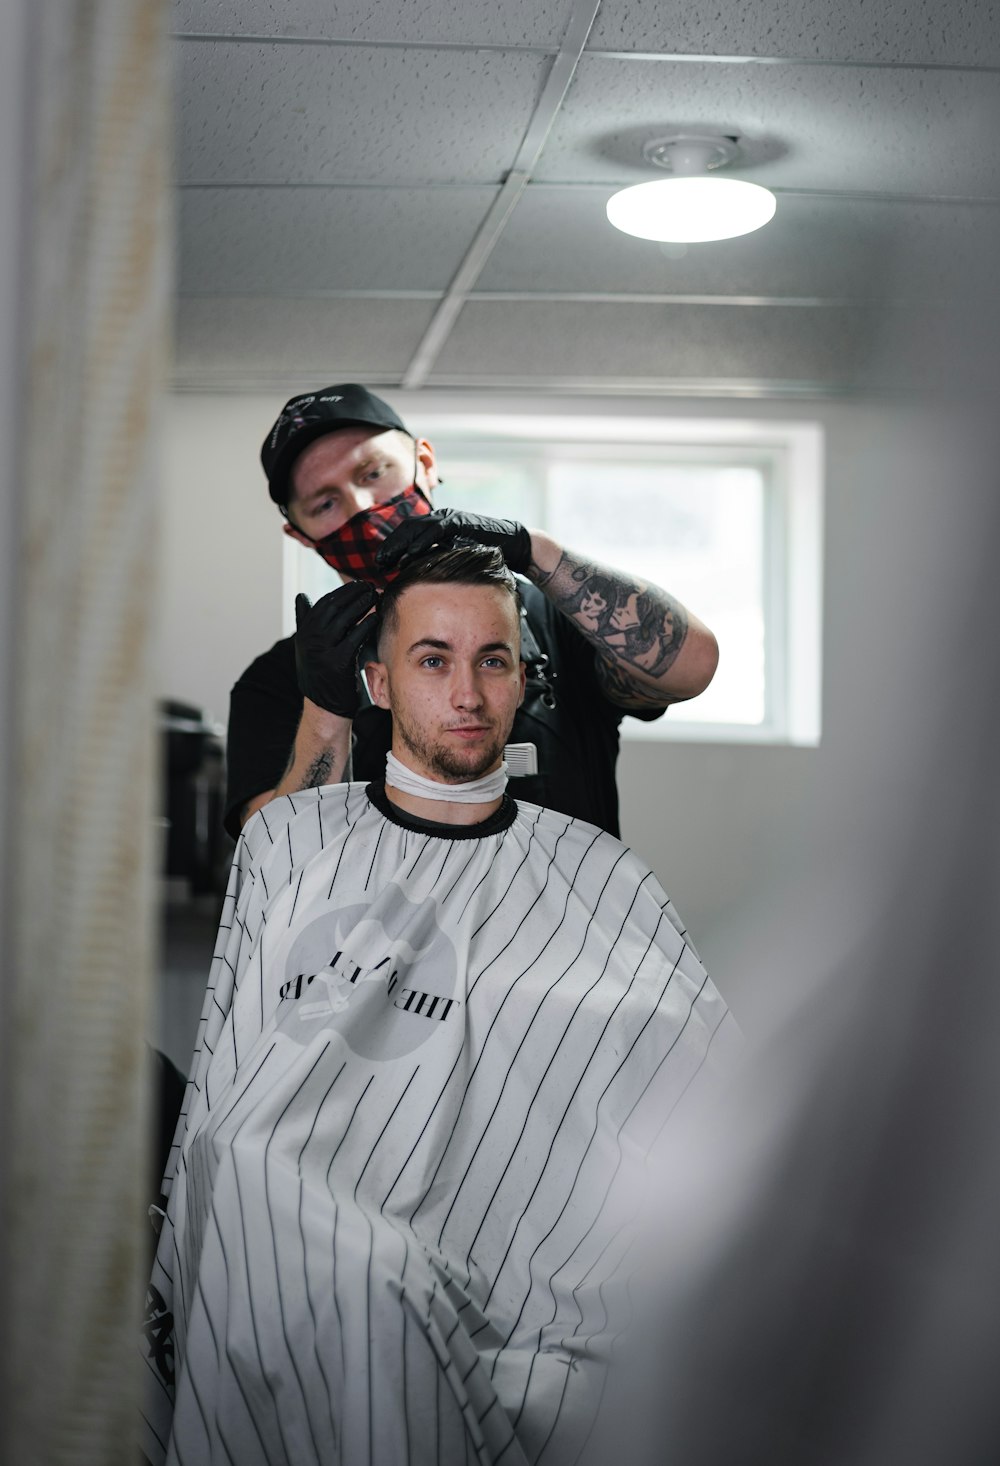 Un hombre cortándose el pelo en una peluquería